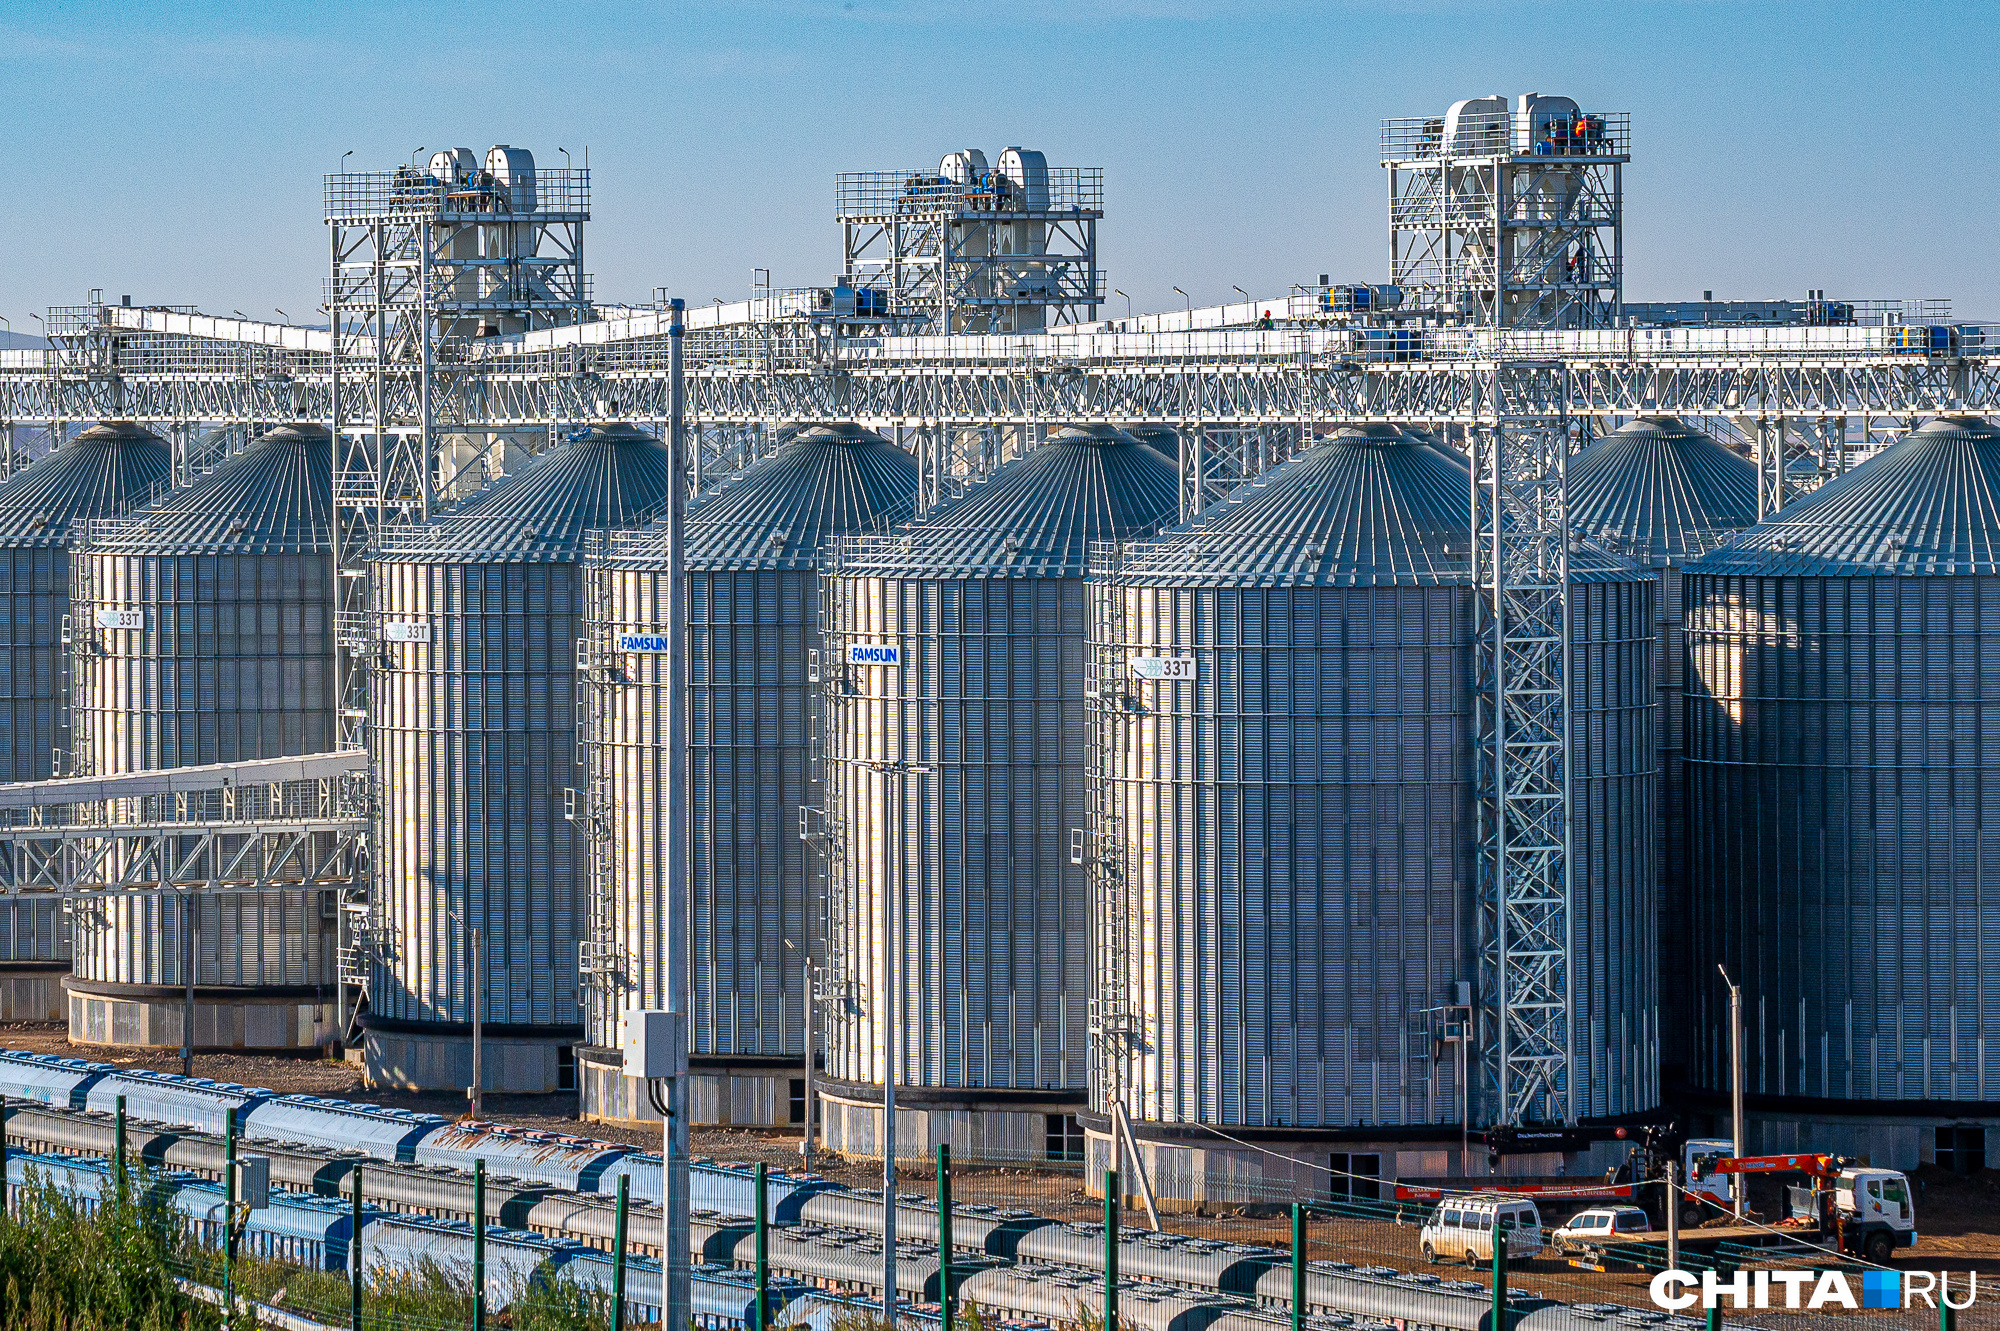 Можно предположить, что зерно будет поставляться из России в Забайкальск в обычных зерновозах, перегружаться на зерновом терминале в контейнеры и, соответственно, переотправляться на вагонах-платформах в Маньчжурию